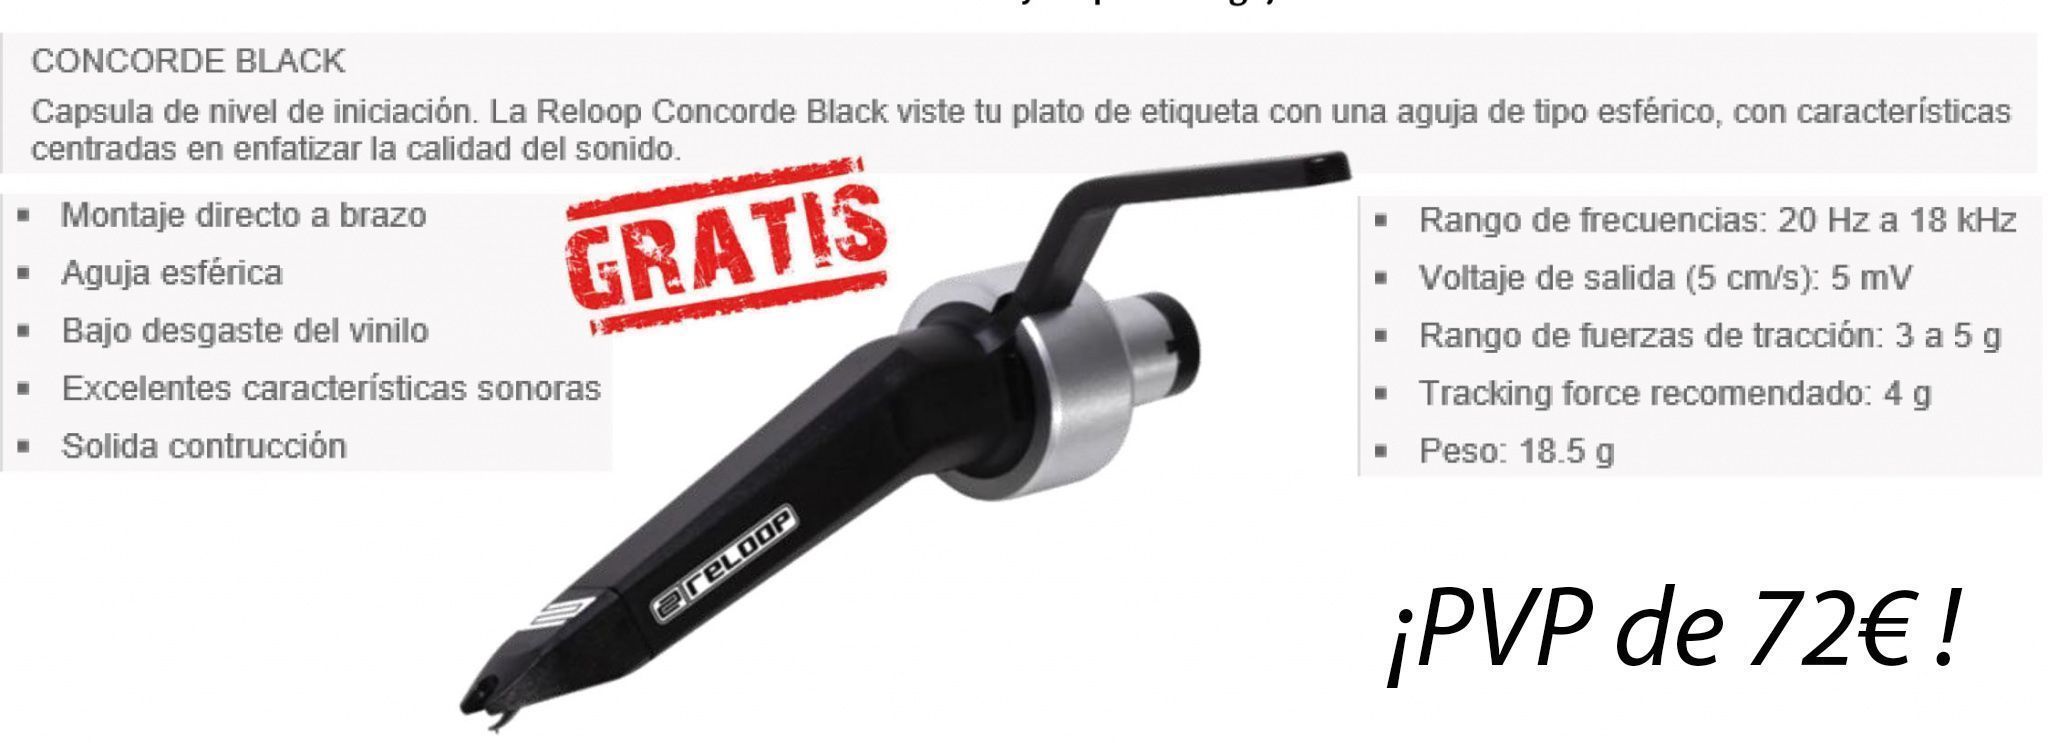 CONCORDE BLACK